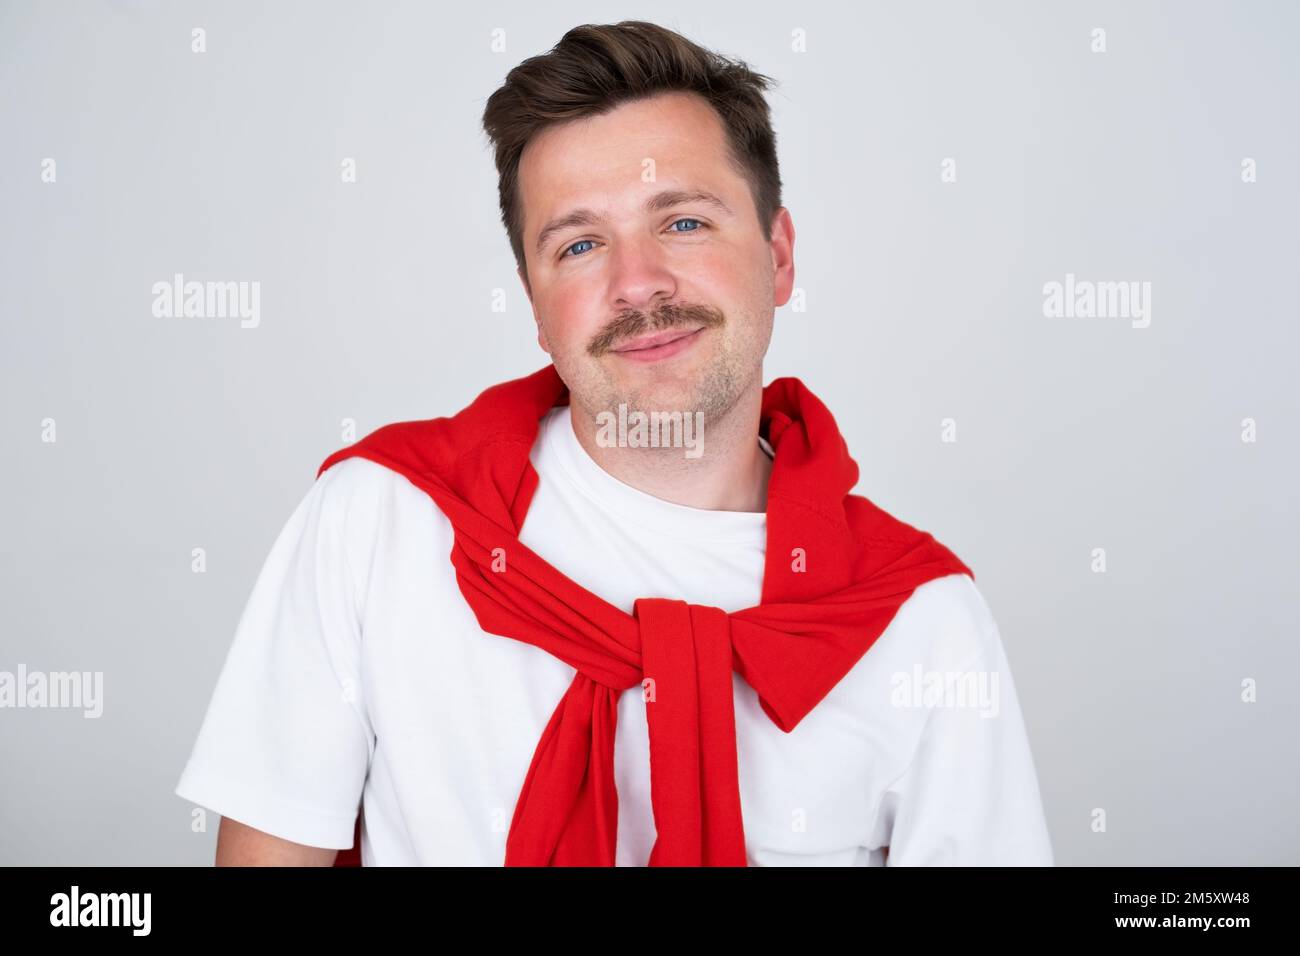 Porträt eines braunen, lächelnden, gutaussehenden Mannes mit Schnurrbart. Grauer Hintergrund. Stockfoto